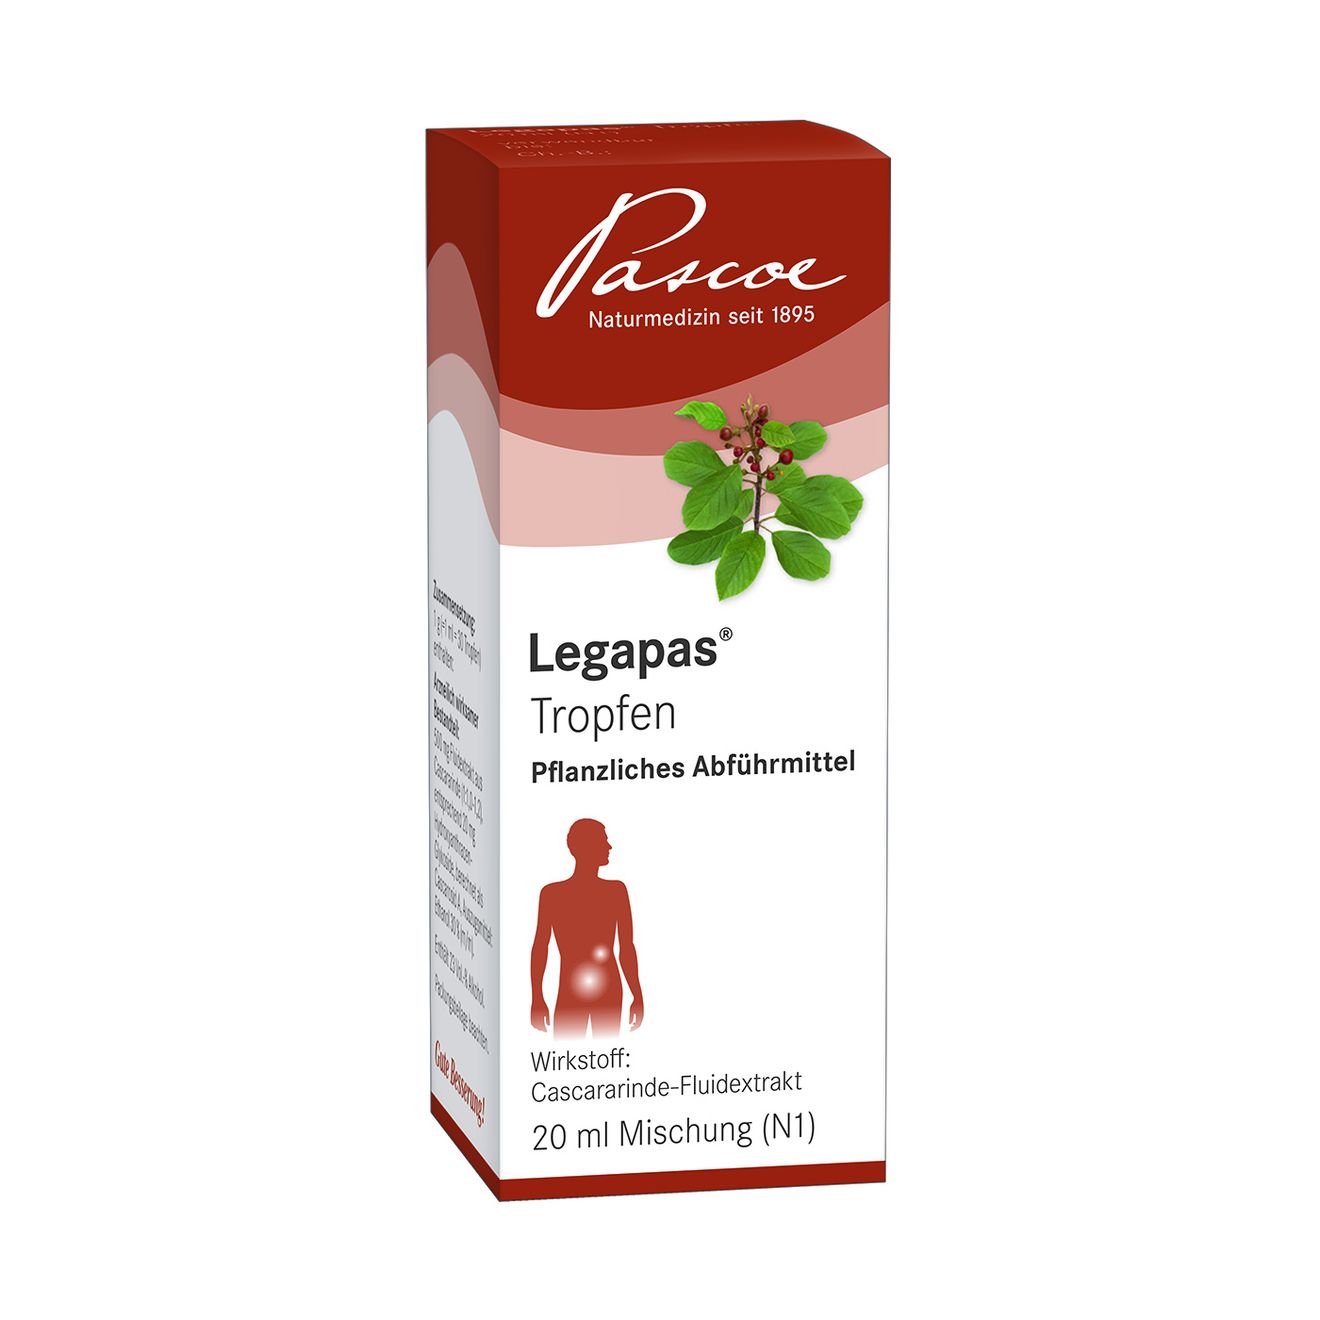 Legapas 20 ml Tropfen Packshot PZN 01516668